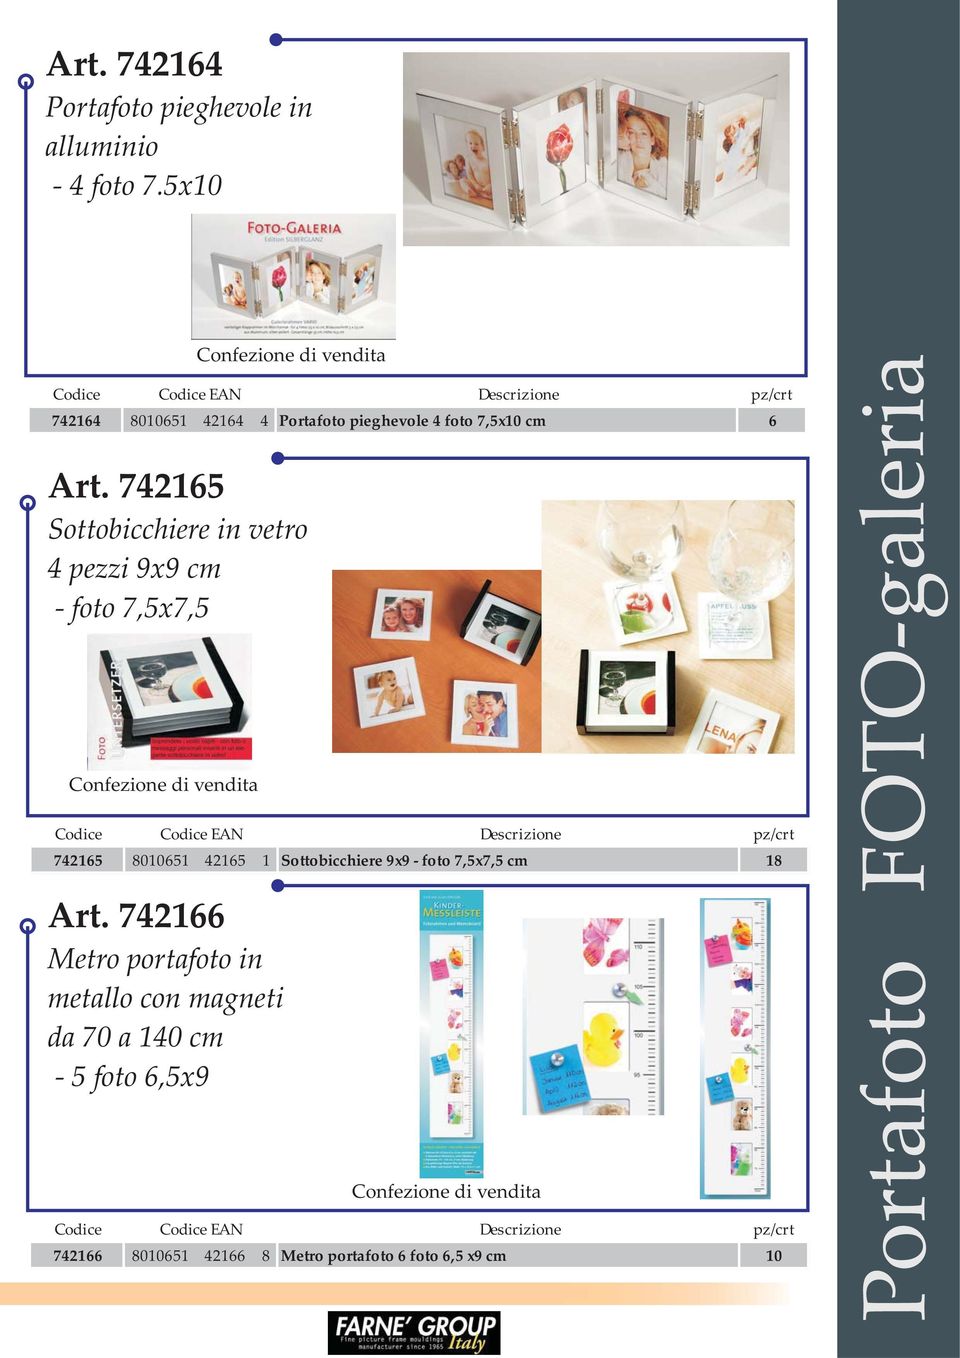 Art. 742165 Sottobicchiere in vetro 4 pezzi 9x9 cm - foto 7,5x7,5 Confezione di vendita 742165 8010651 42165 1